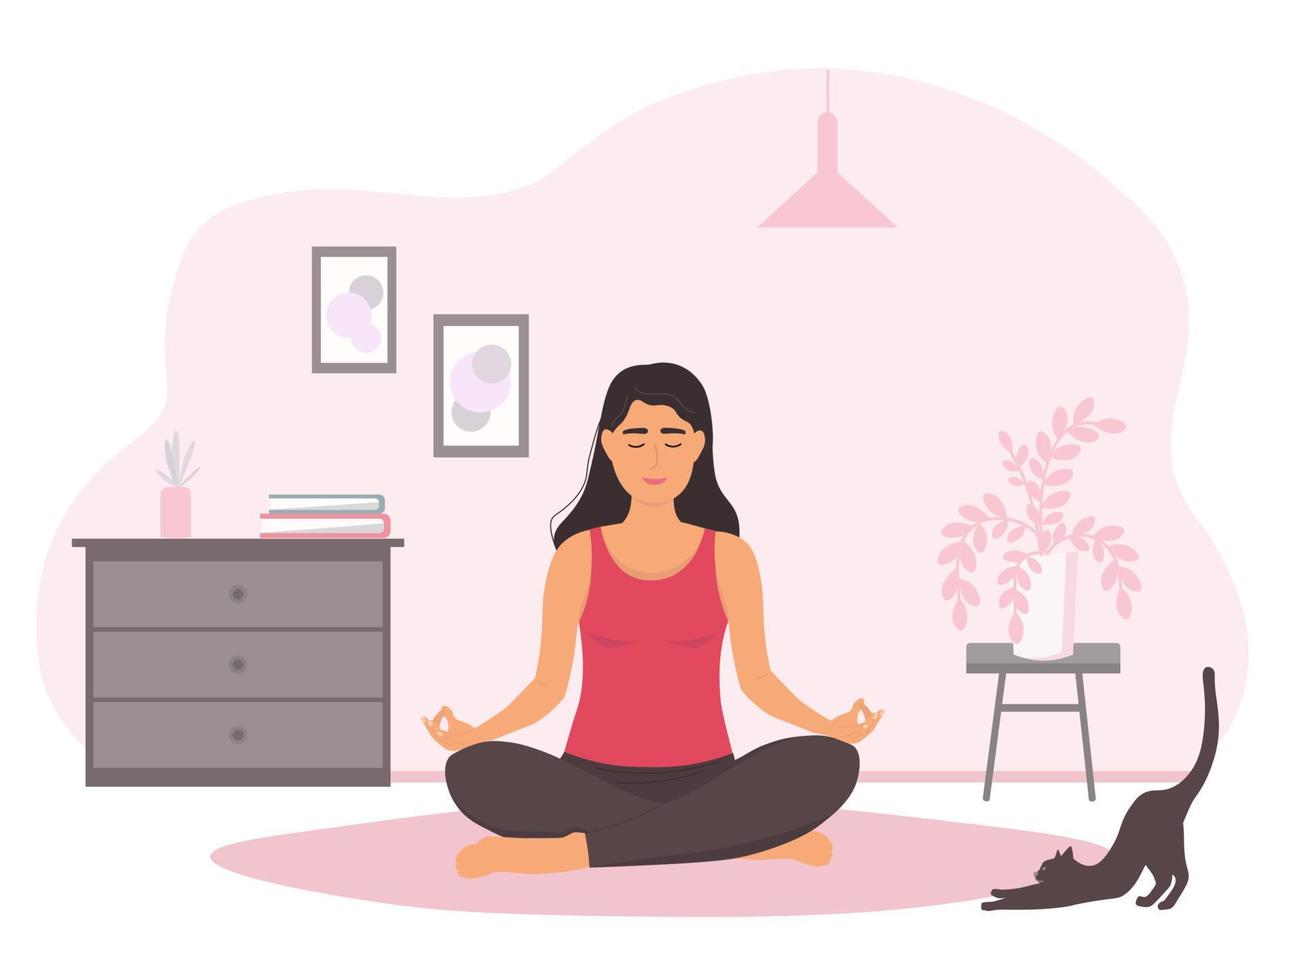 la chica está sentada en posición de loto en la habitación del suelo. una mujer hace asanas de yoga sola en casa. gráficos vectoriales vector